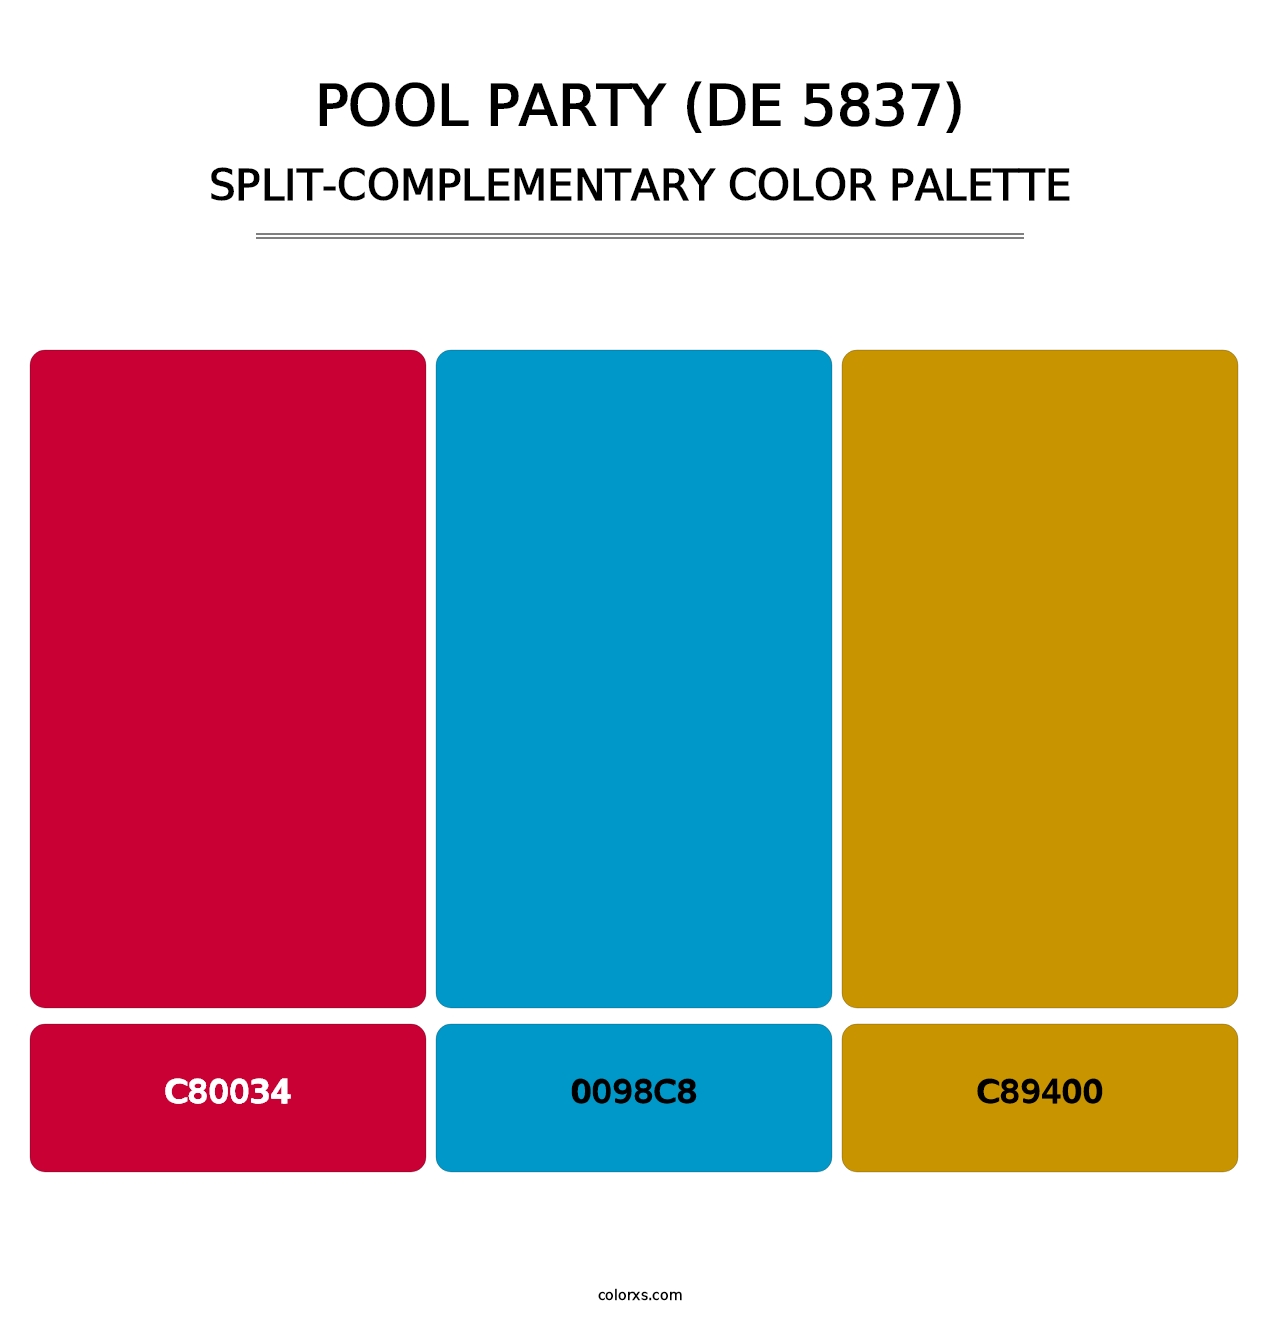 Pool Party (DE 5837) - Split-Complementary Color Palette